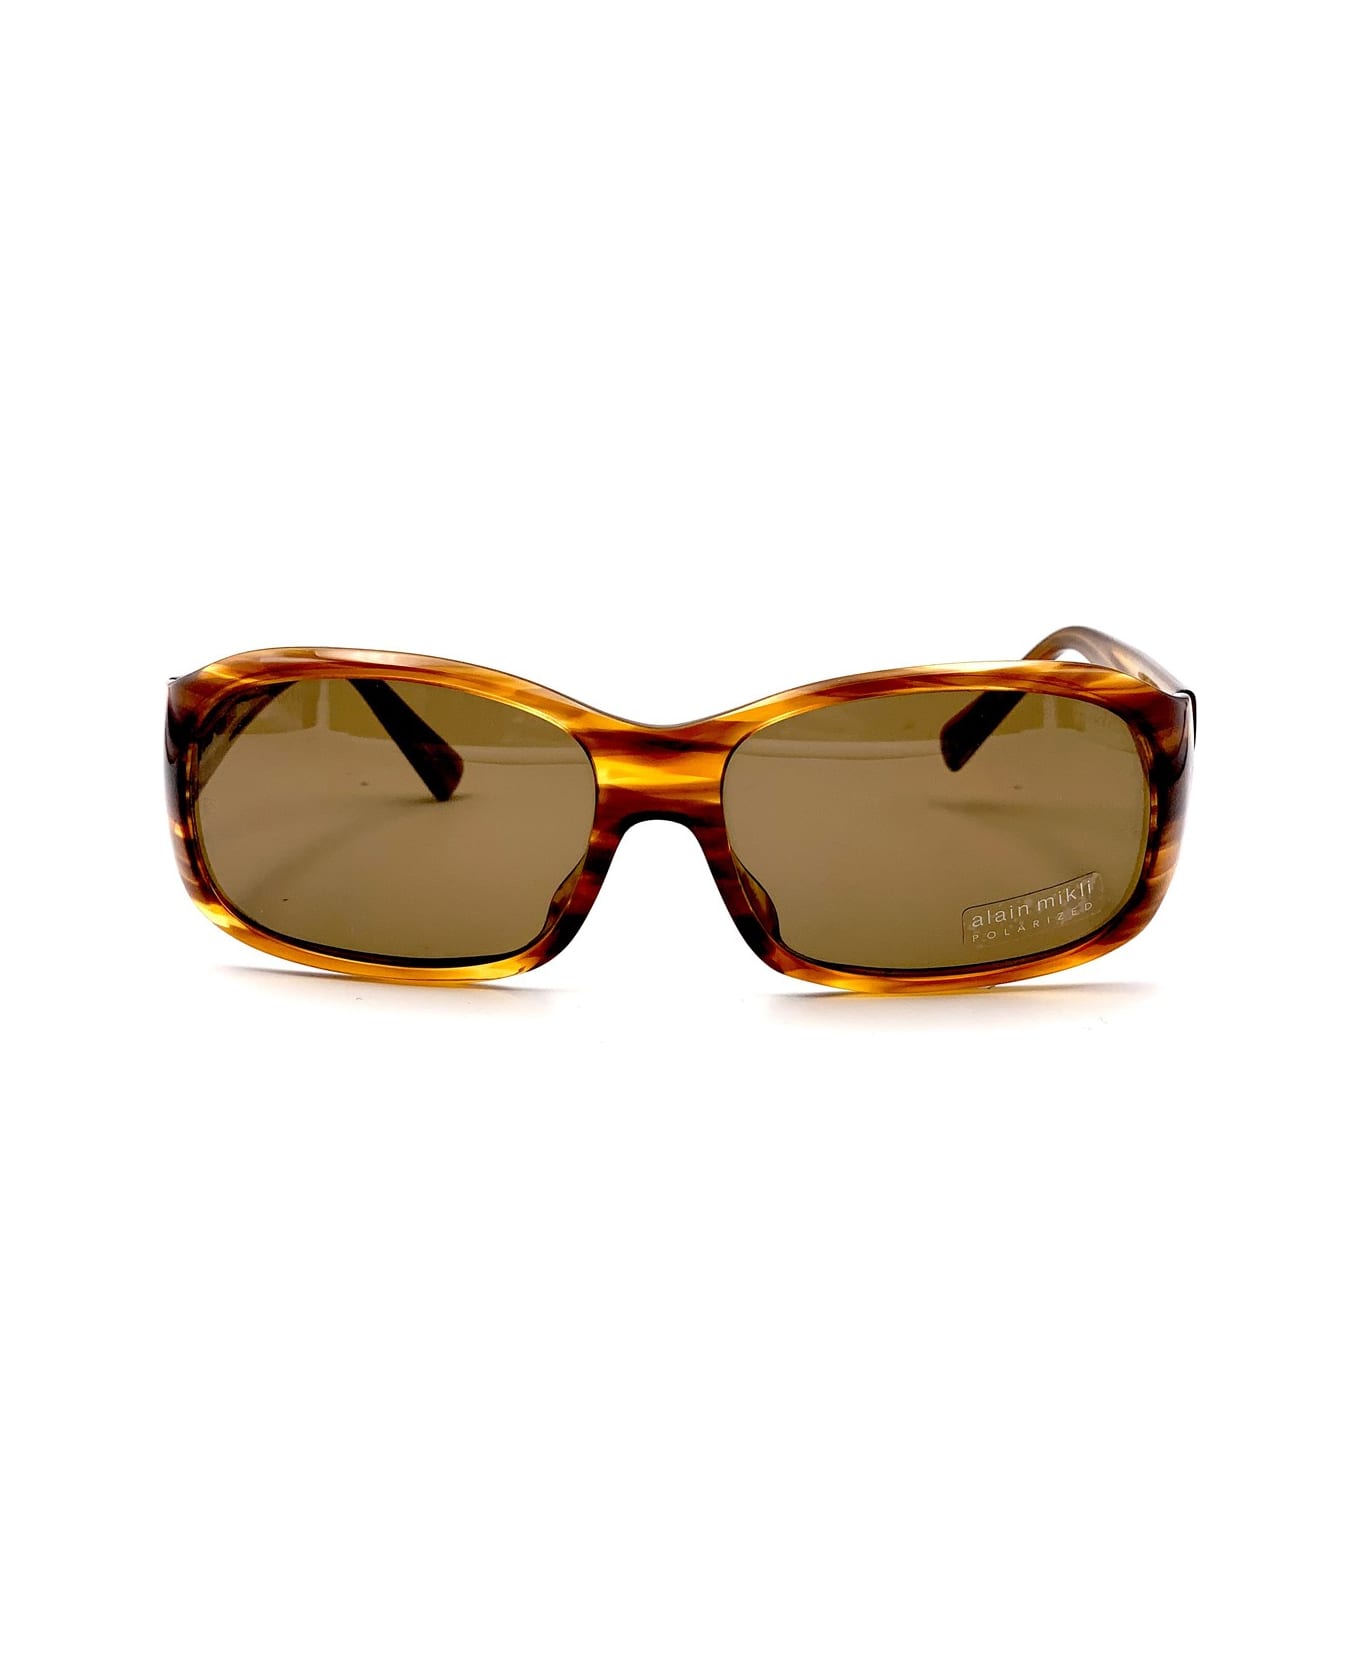 Alain Mikli A0465 Pact Polarizzato Sunglasses - Marrone